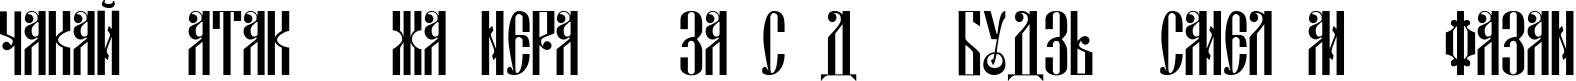 Пример написания шрифтом DSCyrillic текста на белорусском